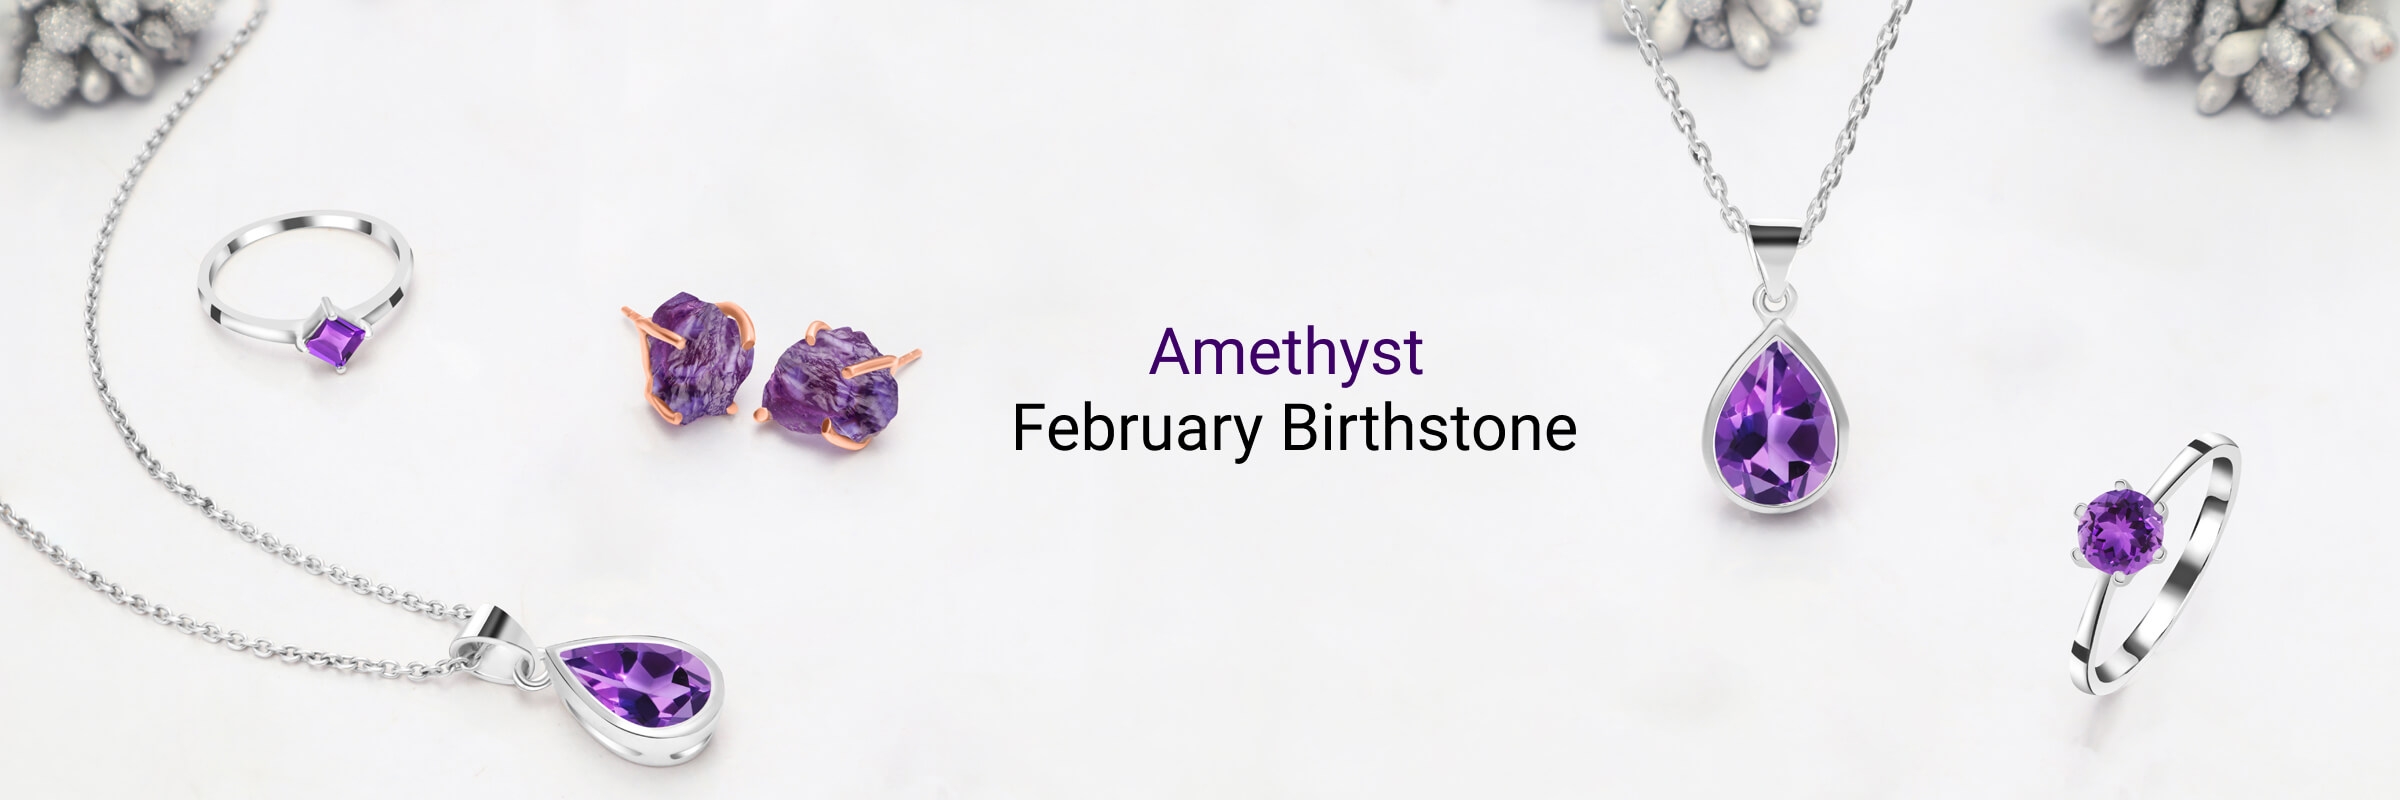 February birthstone amethyst